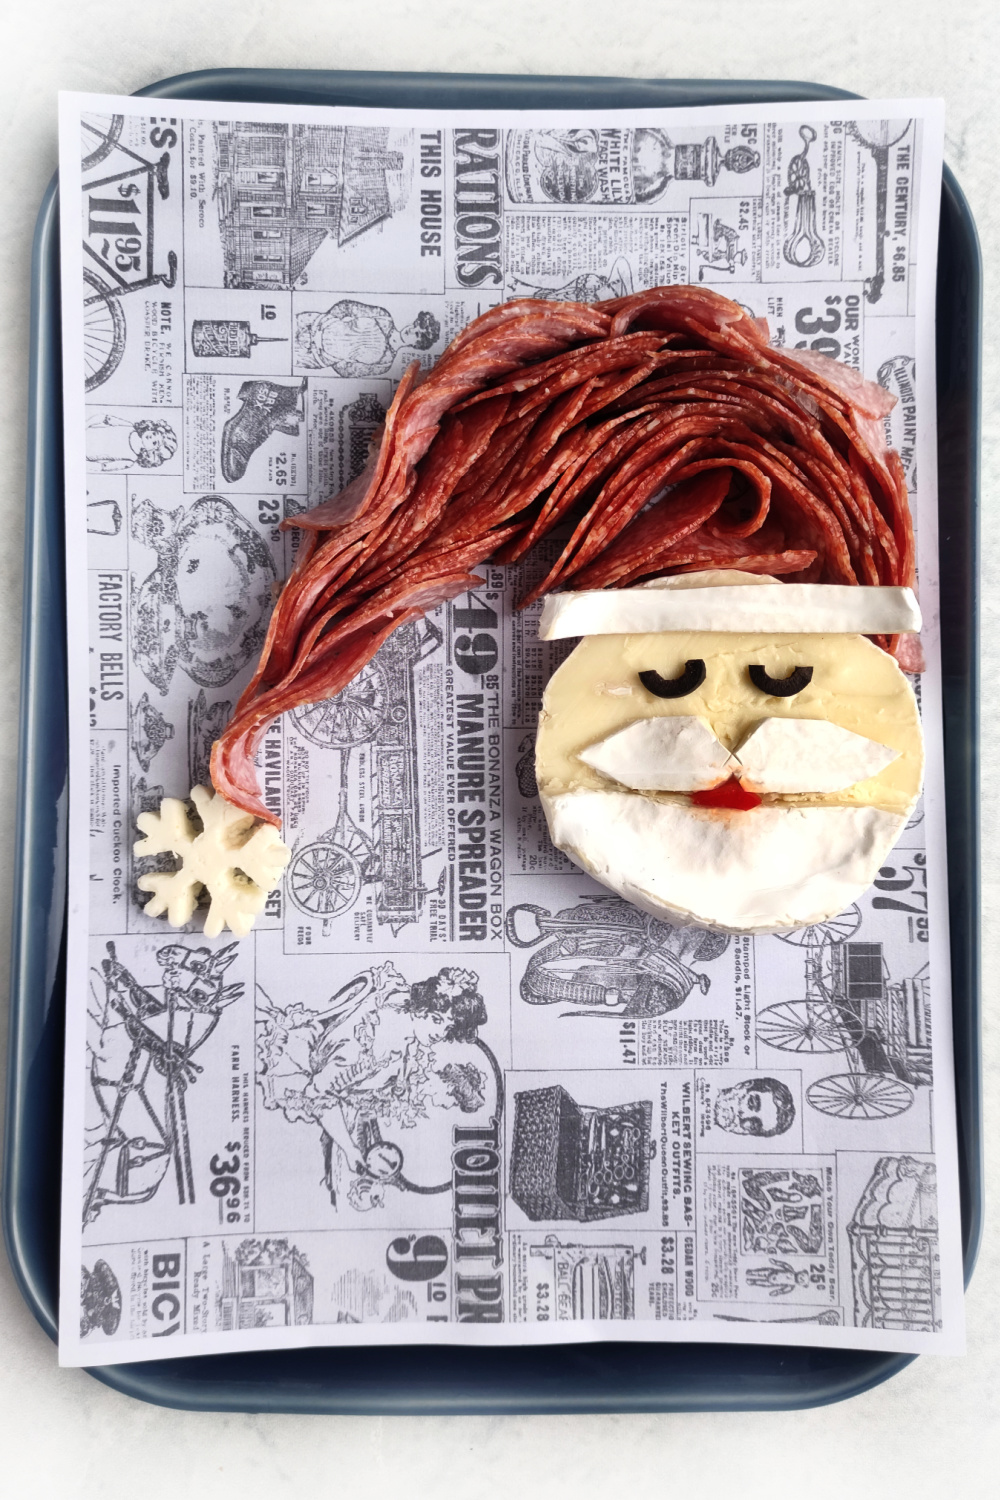 Making a Santa Charcuterie board with a brie cheese santa face